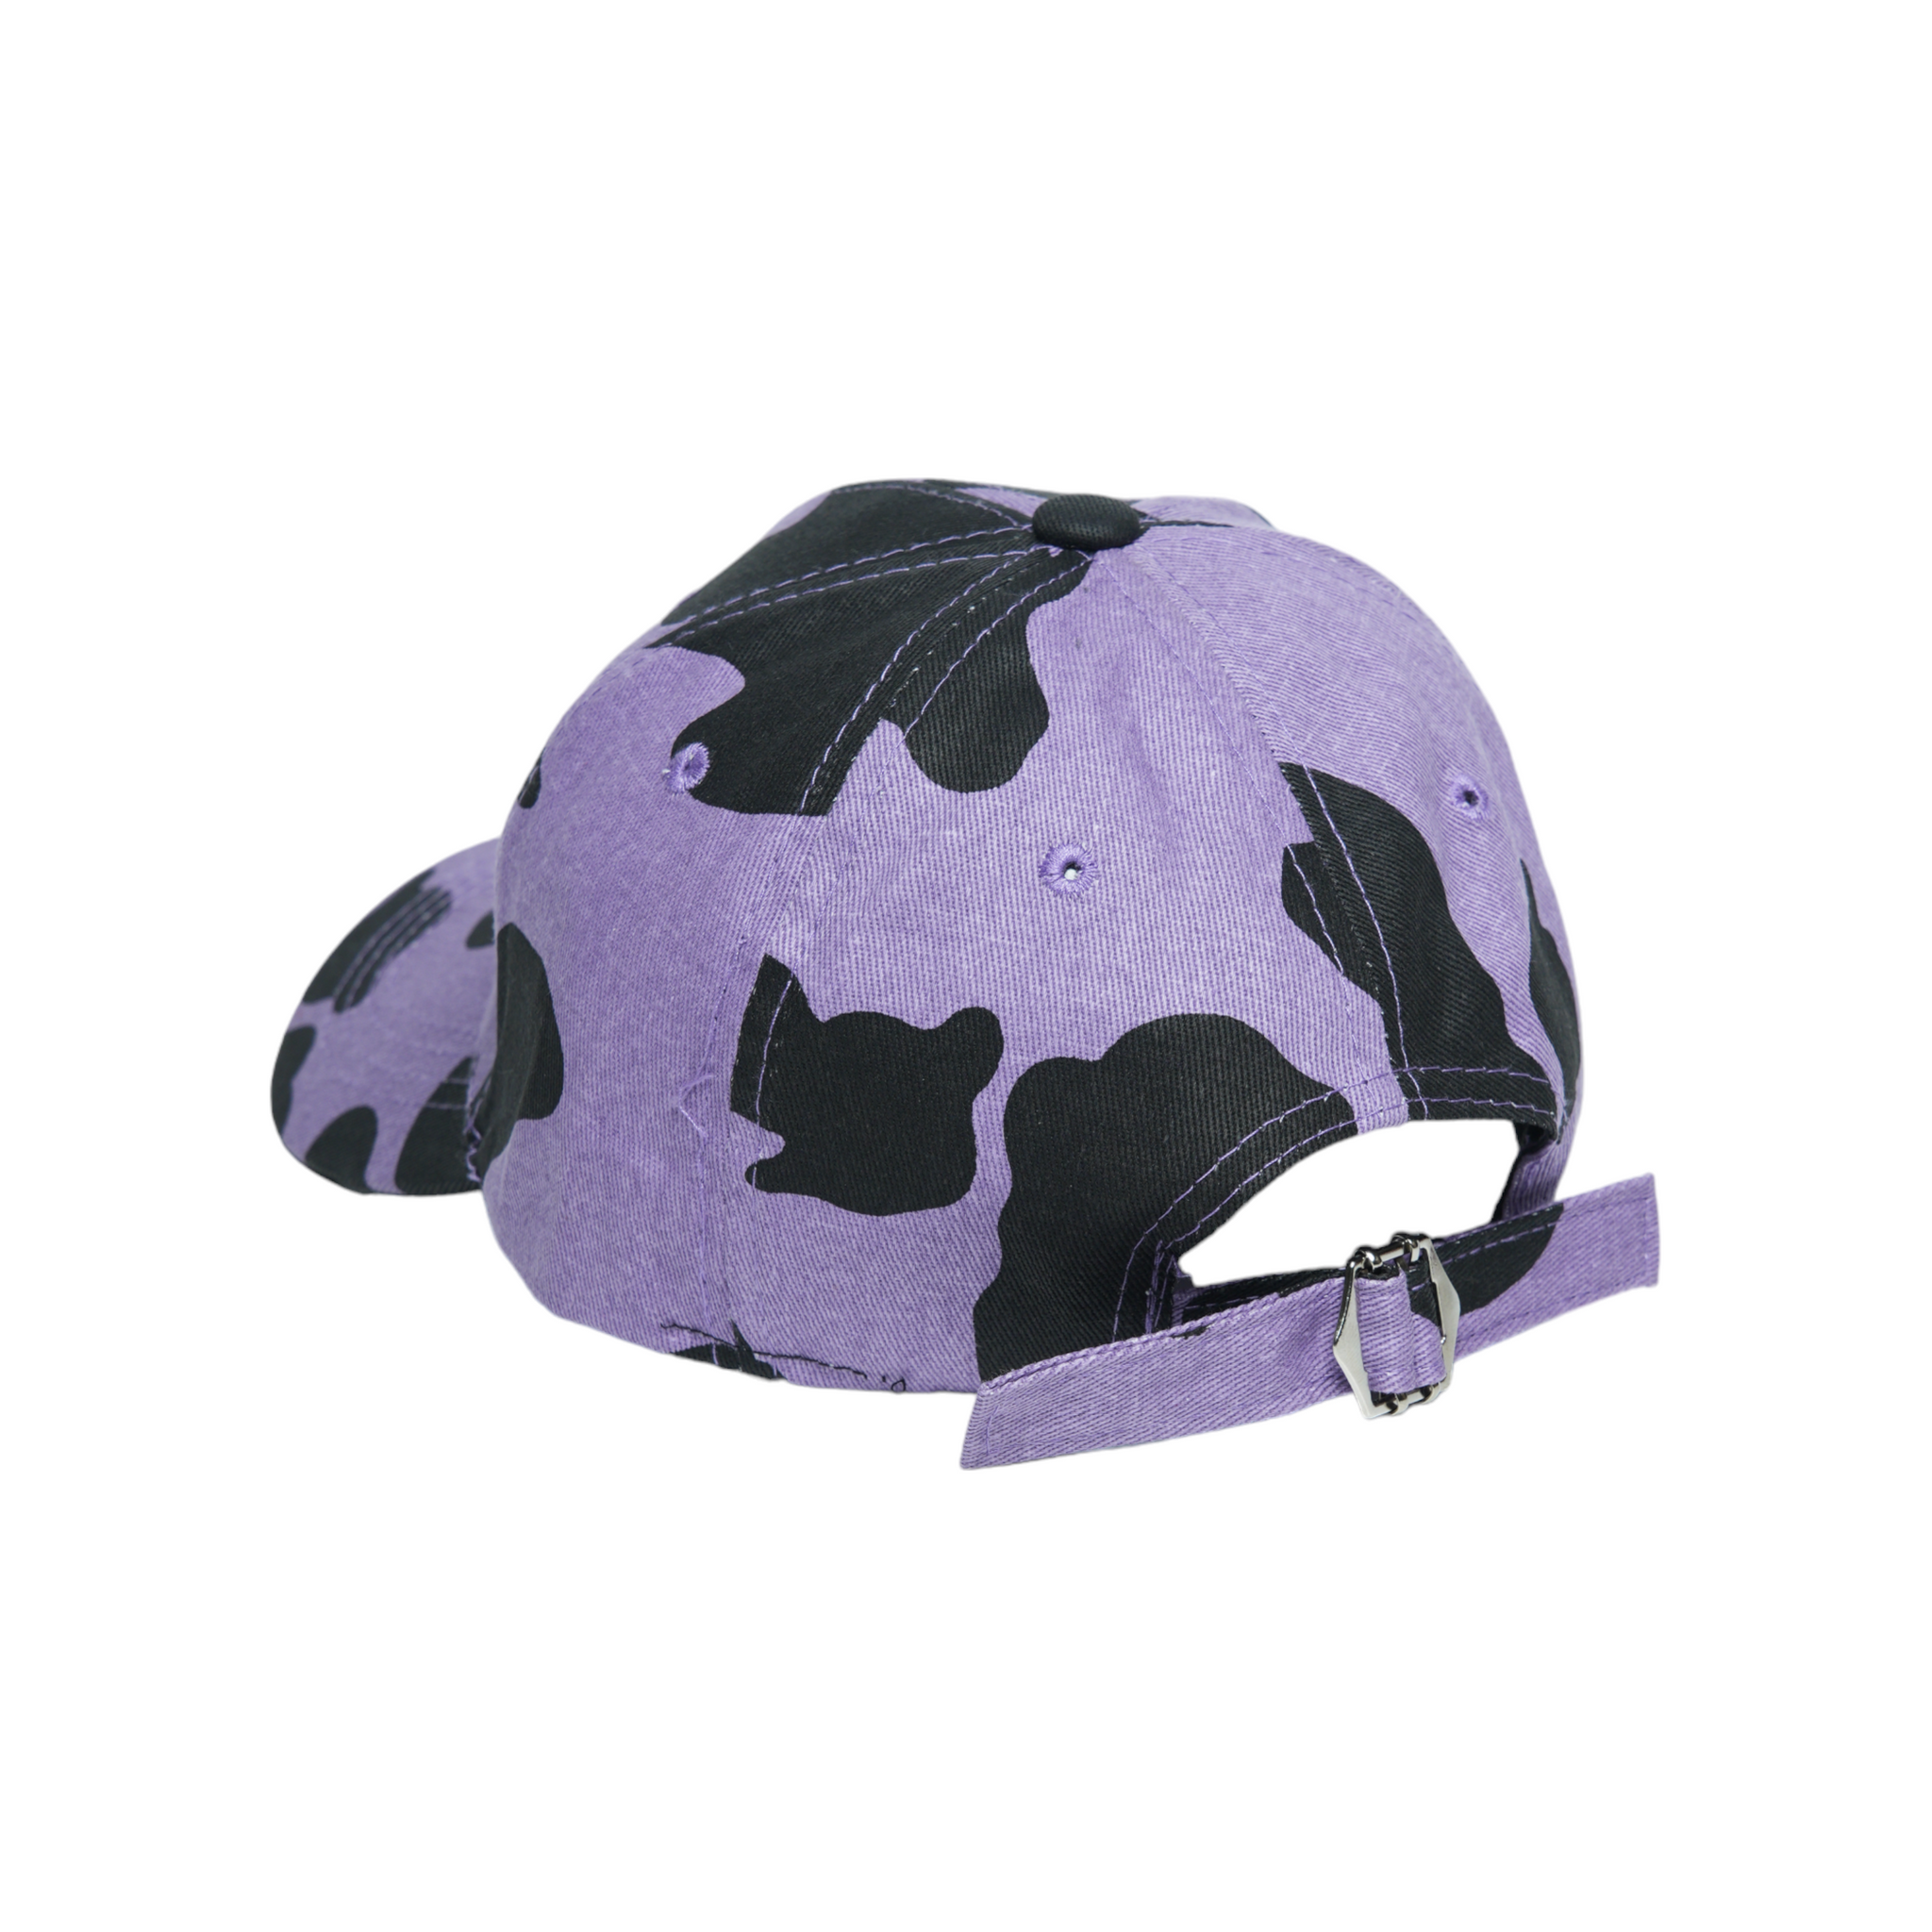 Chokore Cow Print Baseball Cap (Purple)